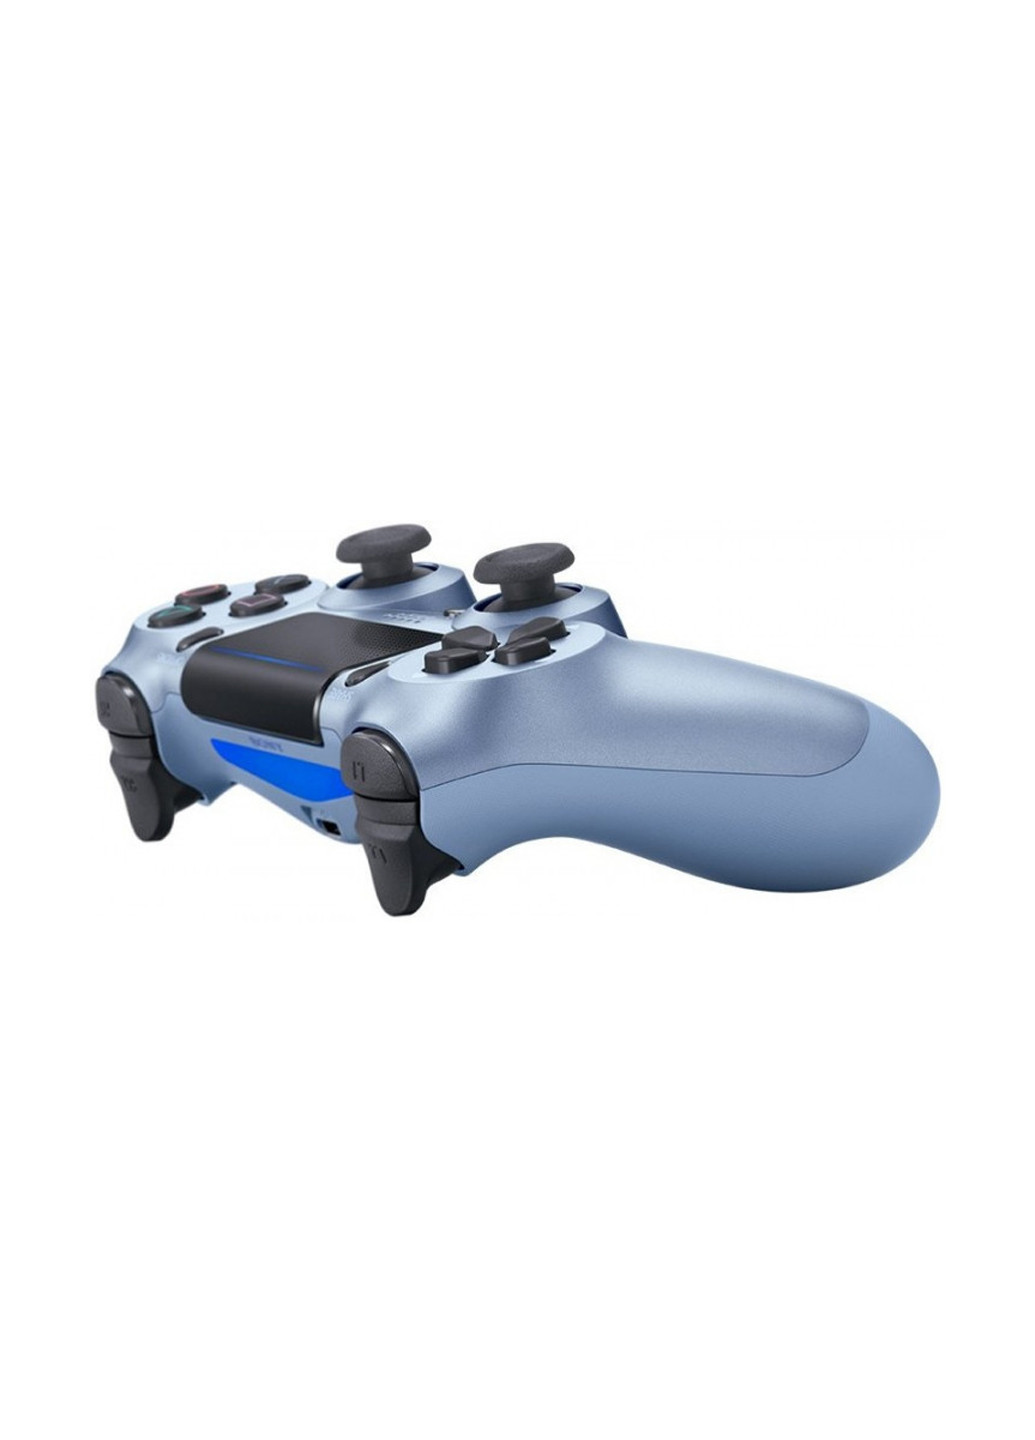 Геймпад беспроводной Dualshock v2 Titanium Blue PlayStation беспроводной dualshock v2 titanium blue (149267839)